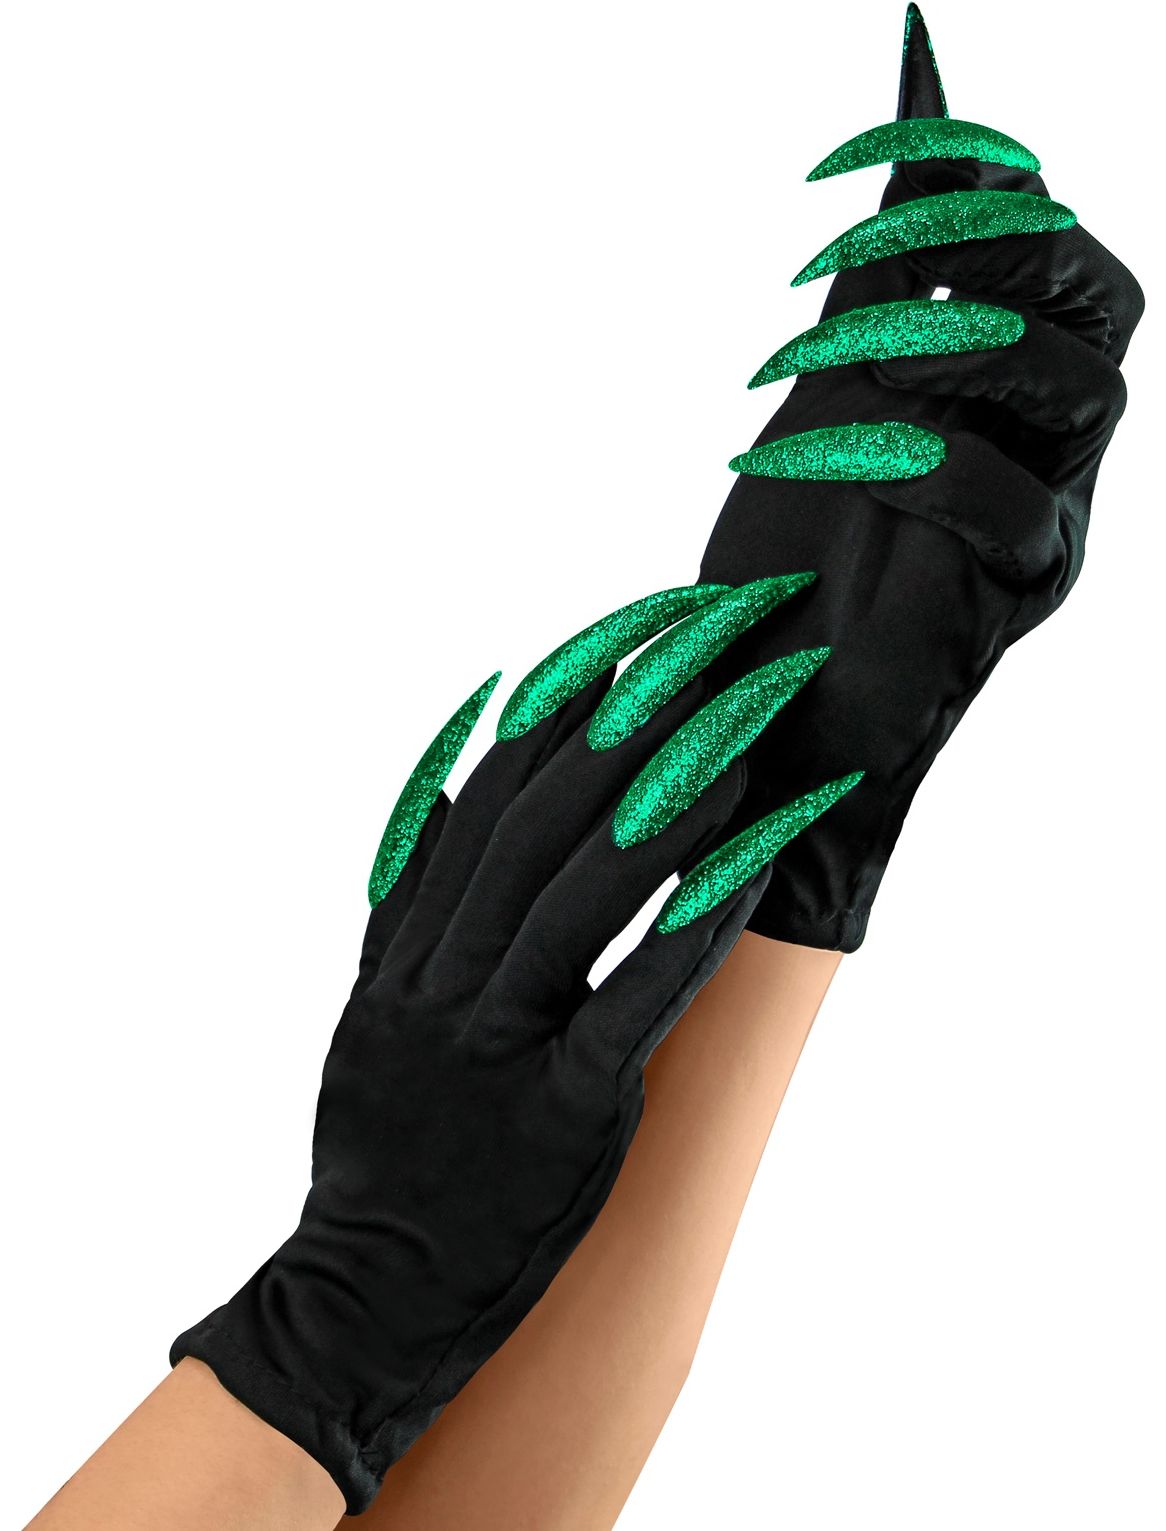 Heks handschoenen met groene nagels